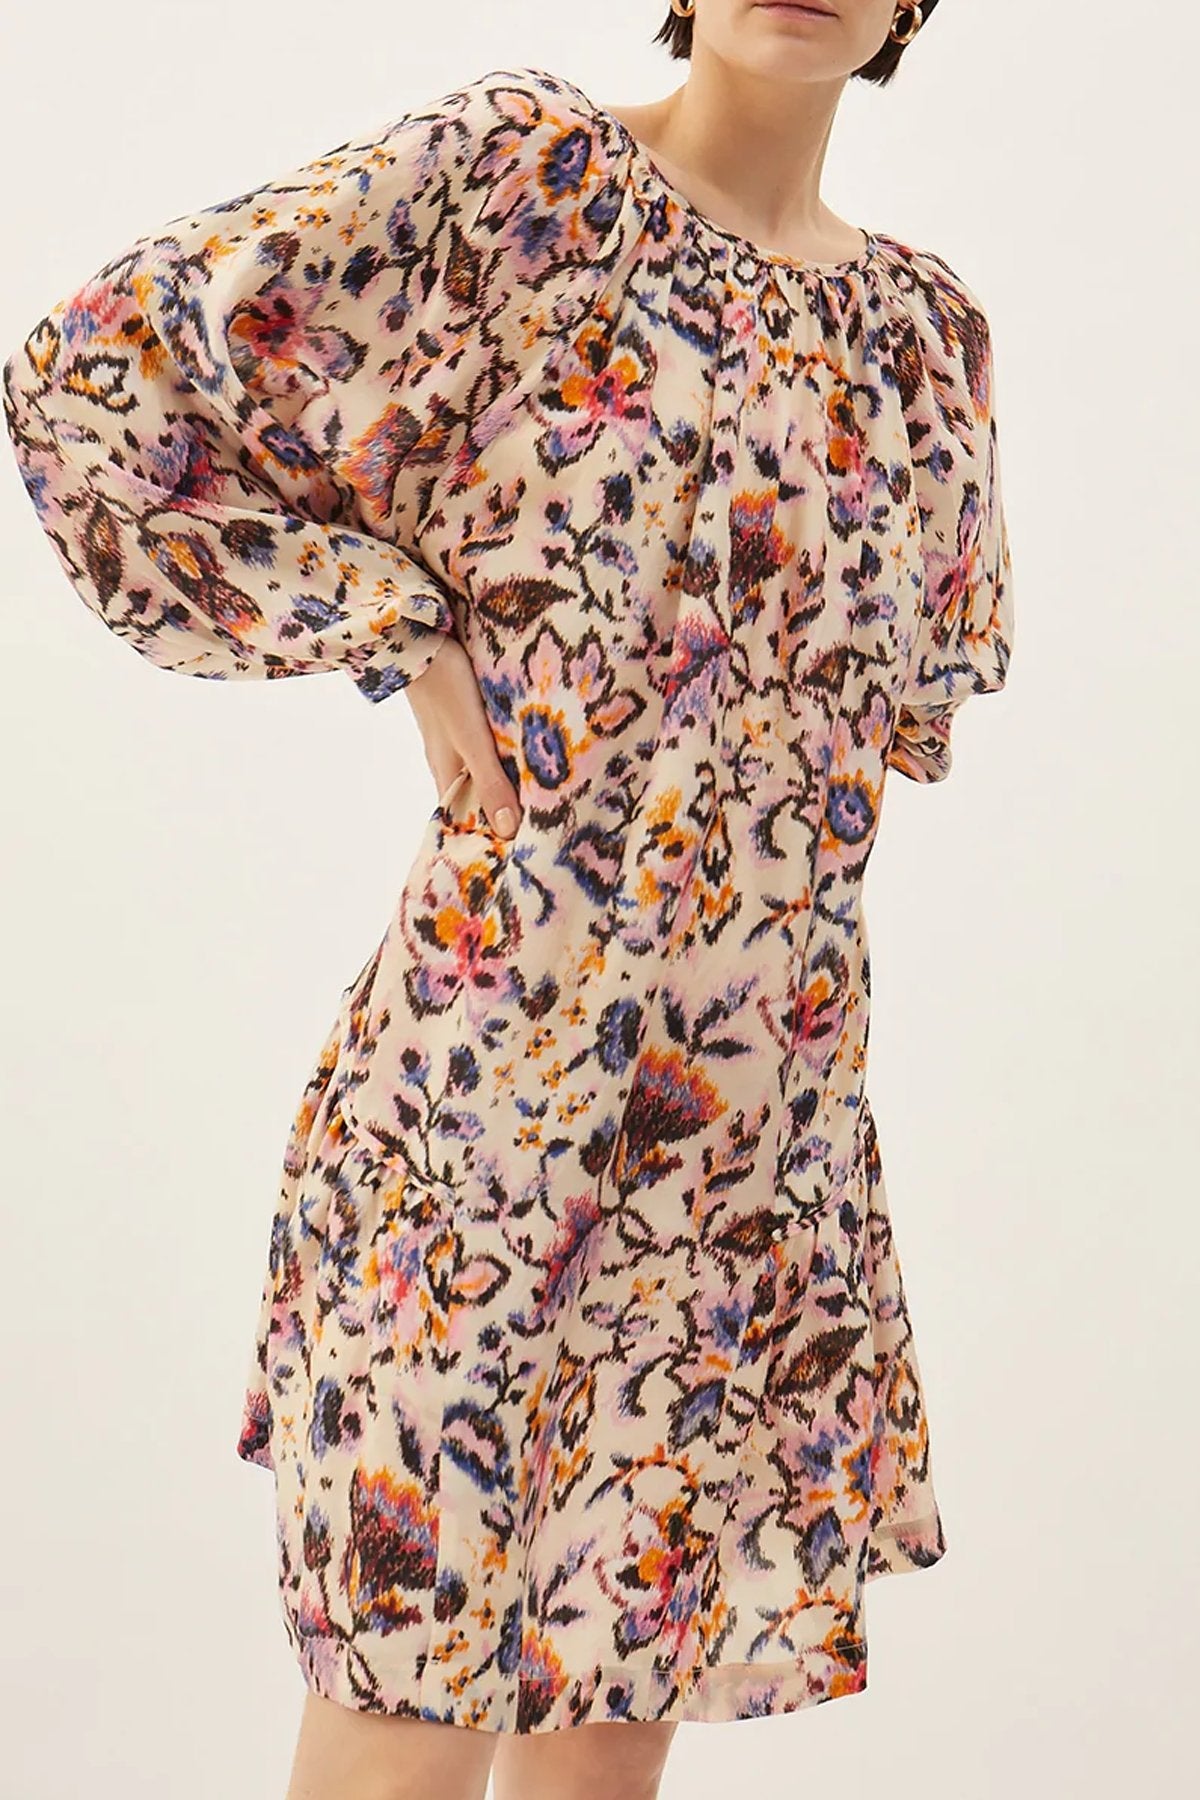 Mataro Pia Short Dress in Mix 2 - shop-olivia.com